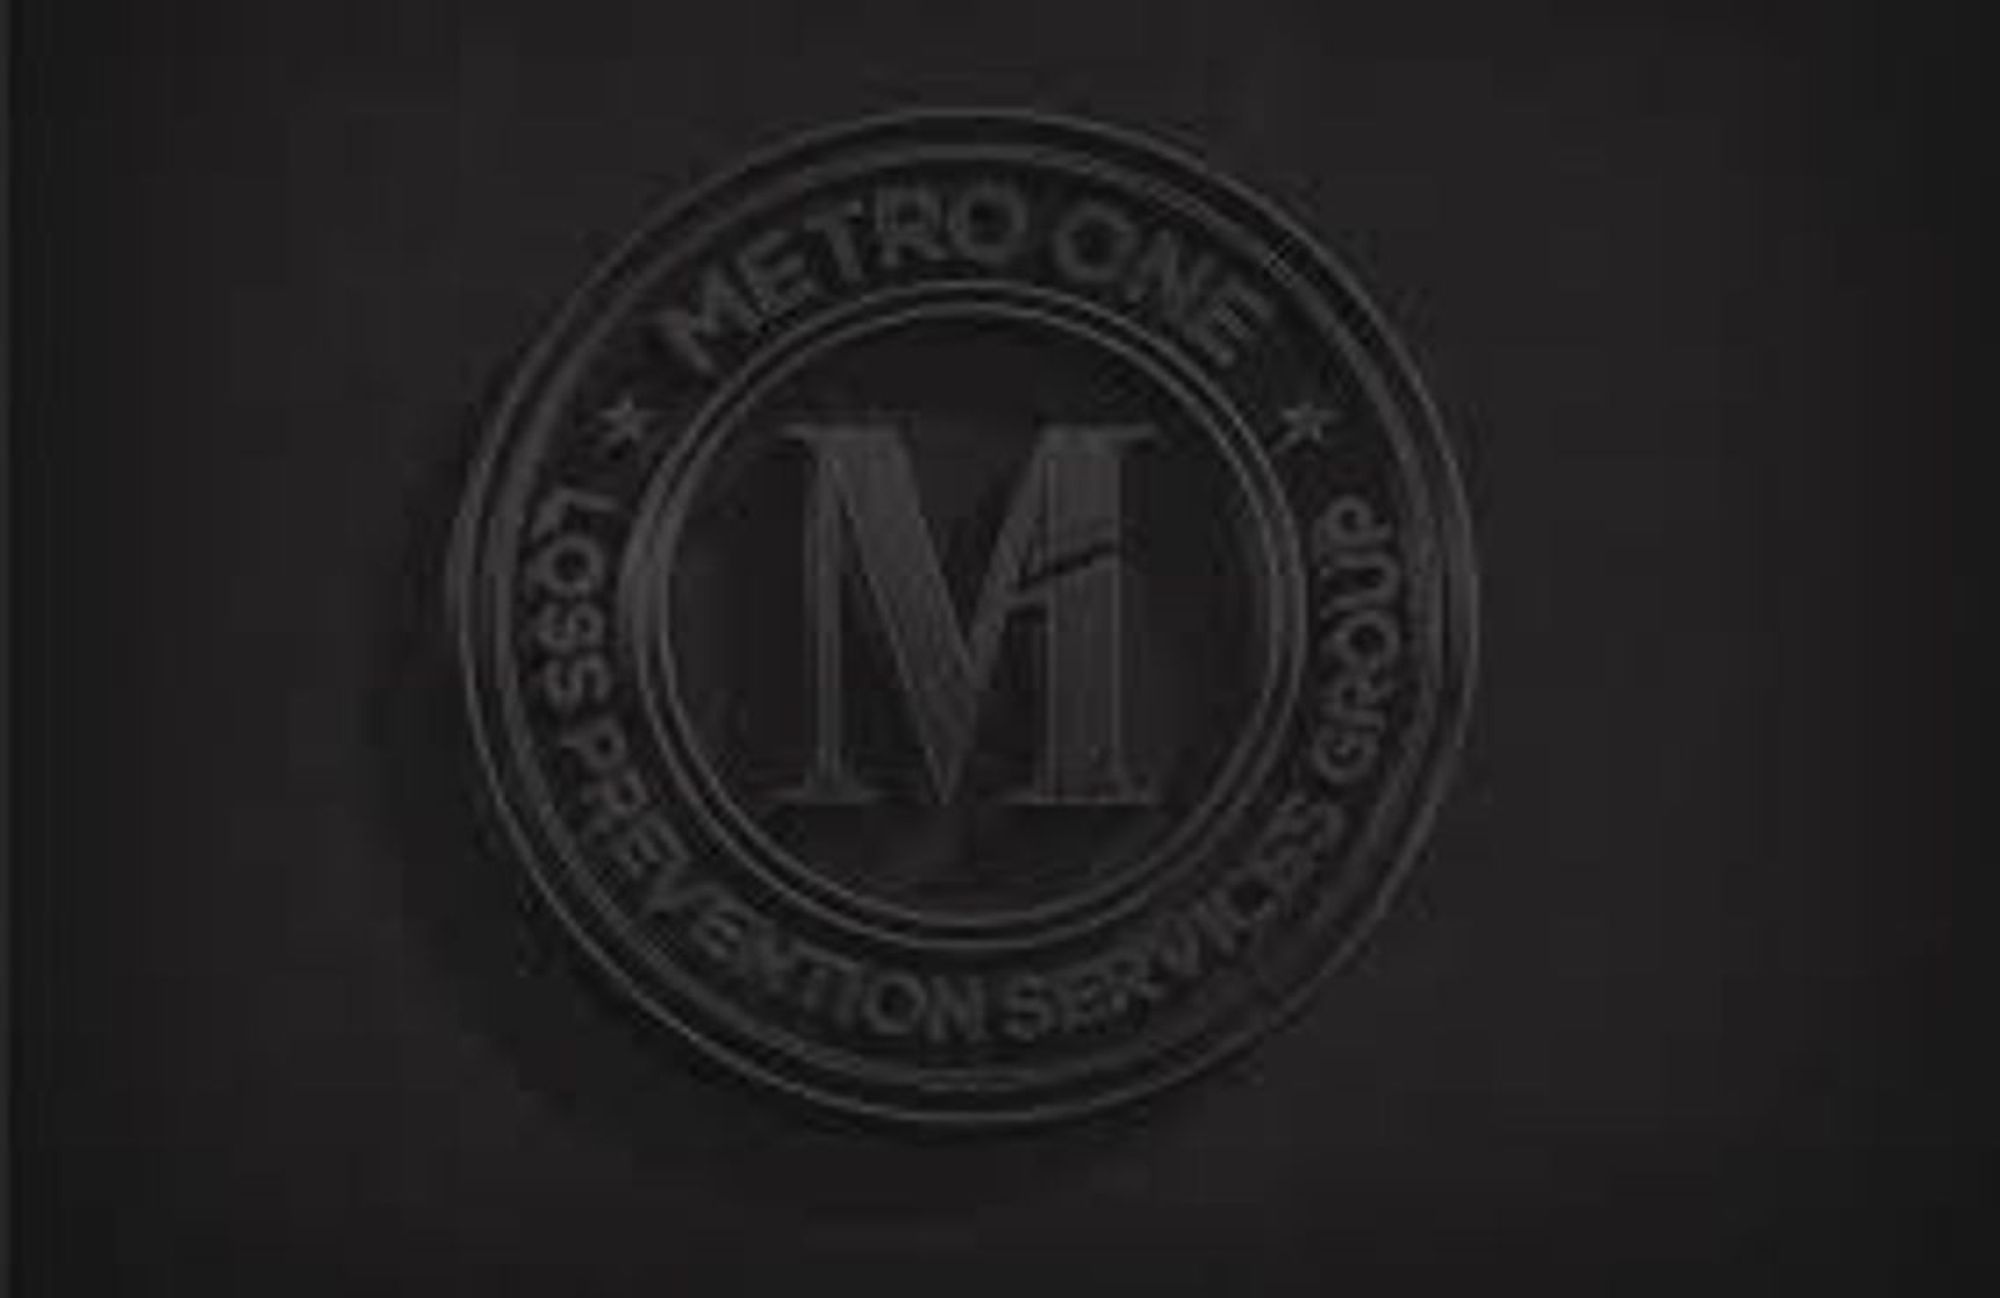 Metro One